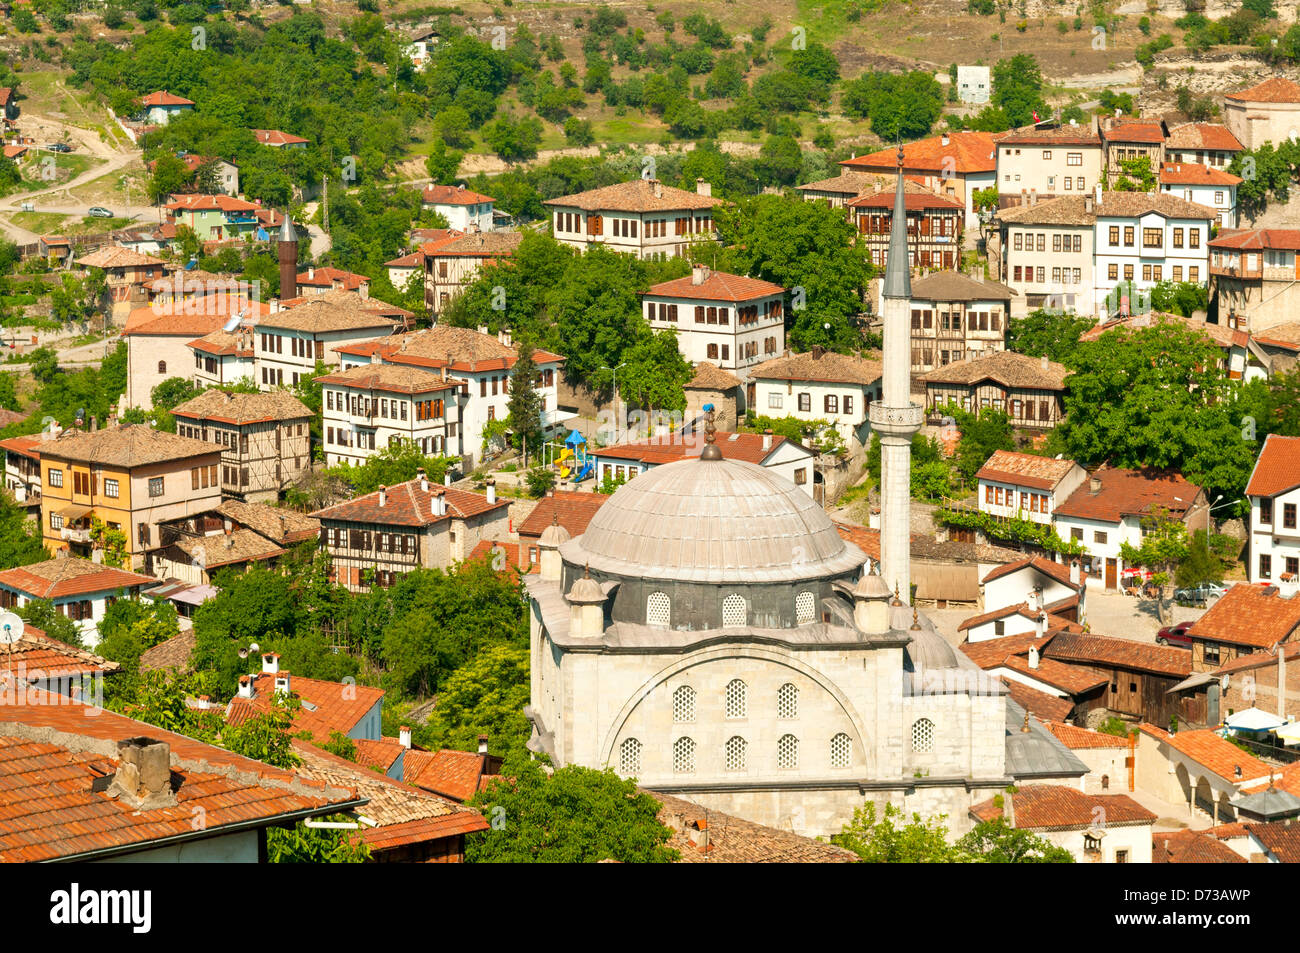 Maisons ottomanes, Safranbolu, Karabuk, Turquie Banque D'Images